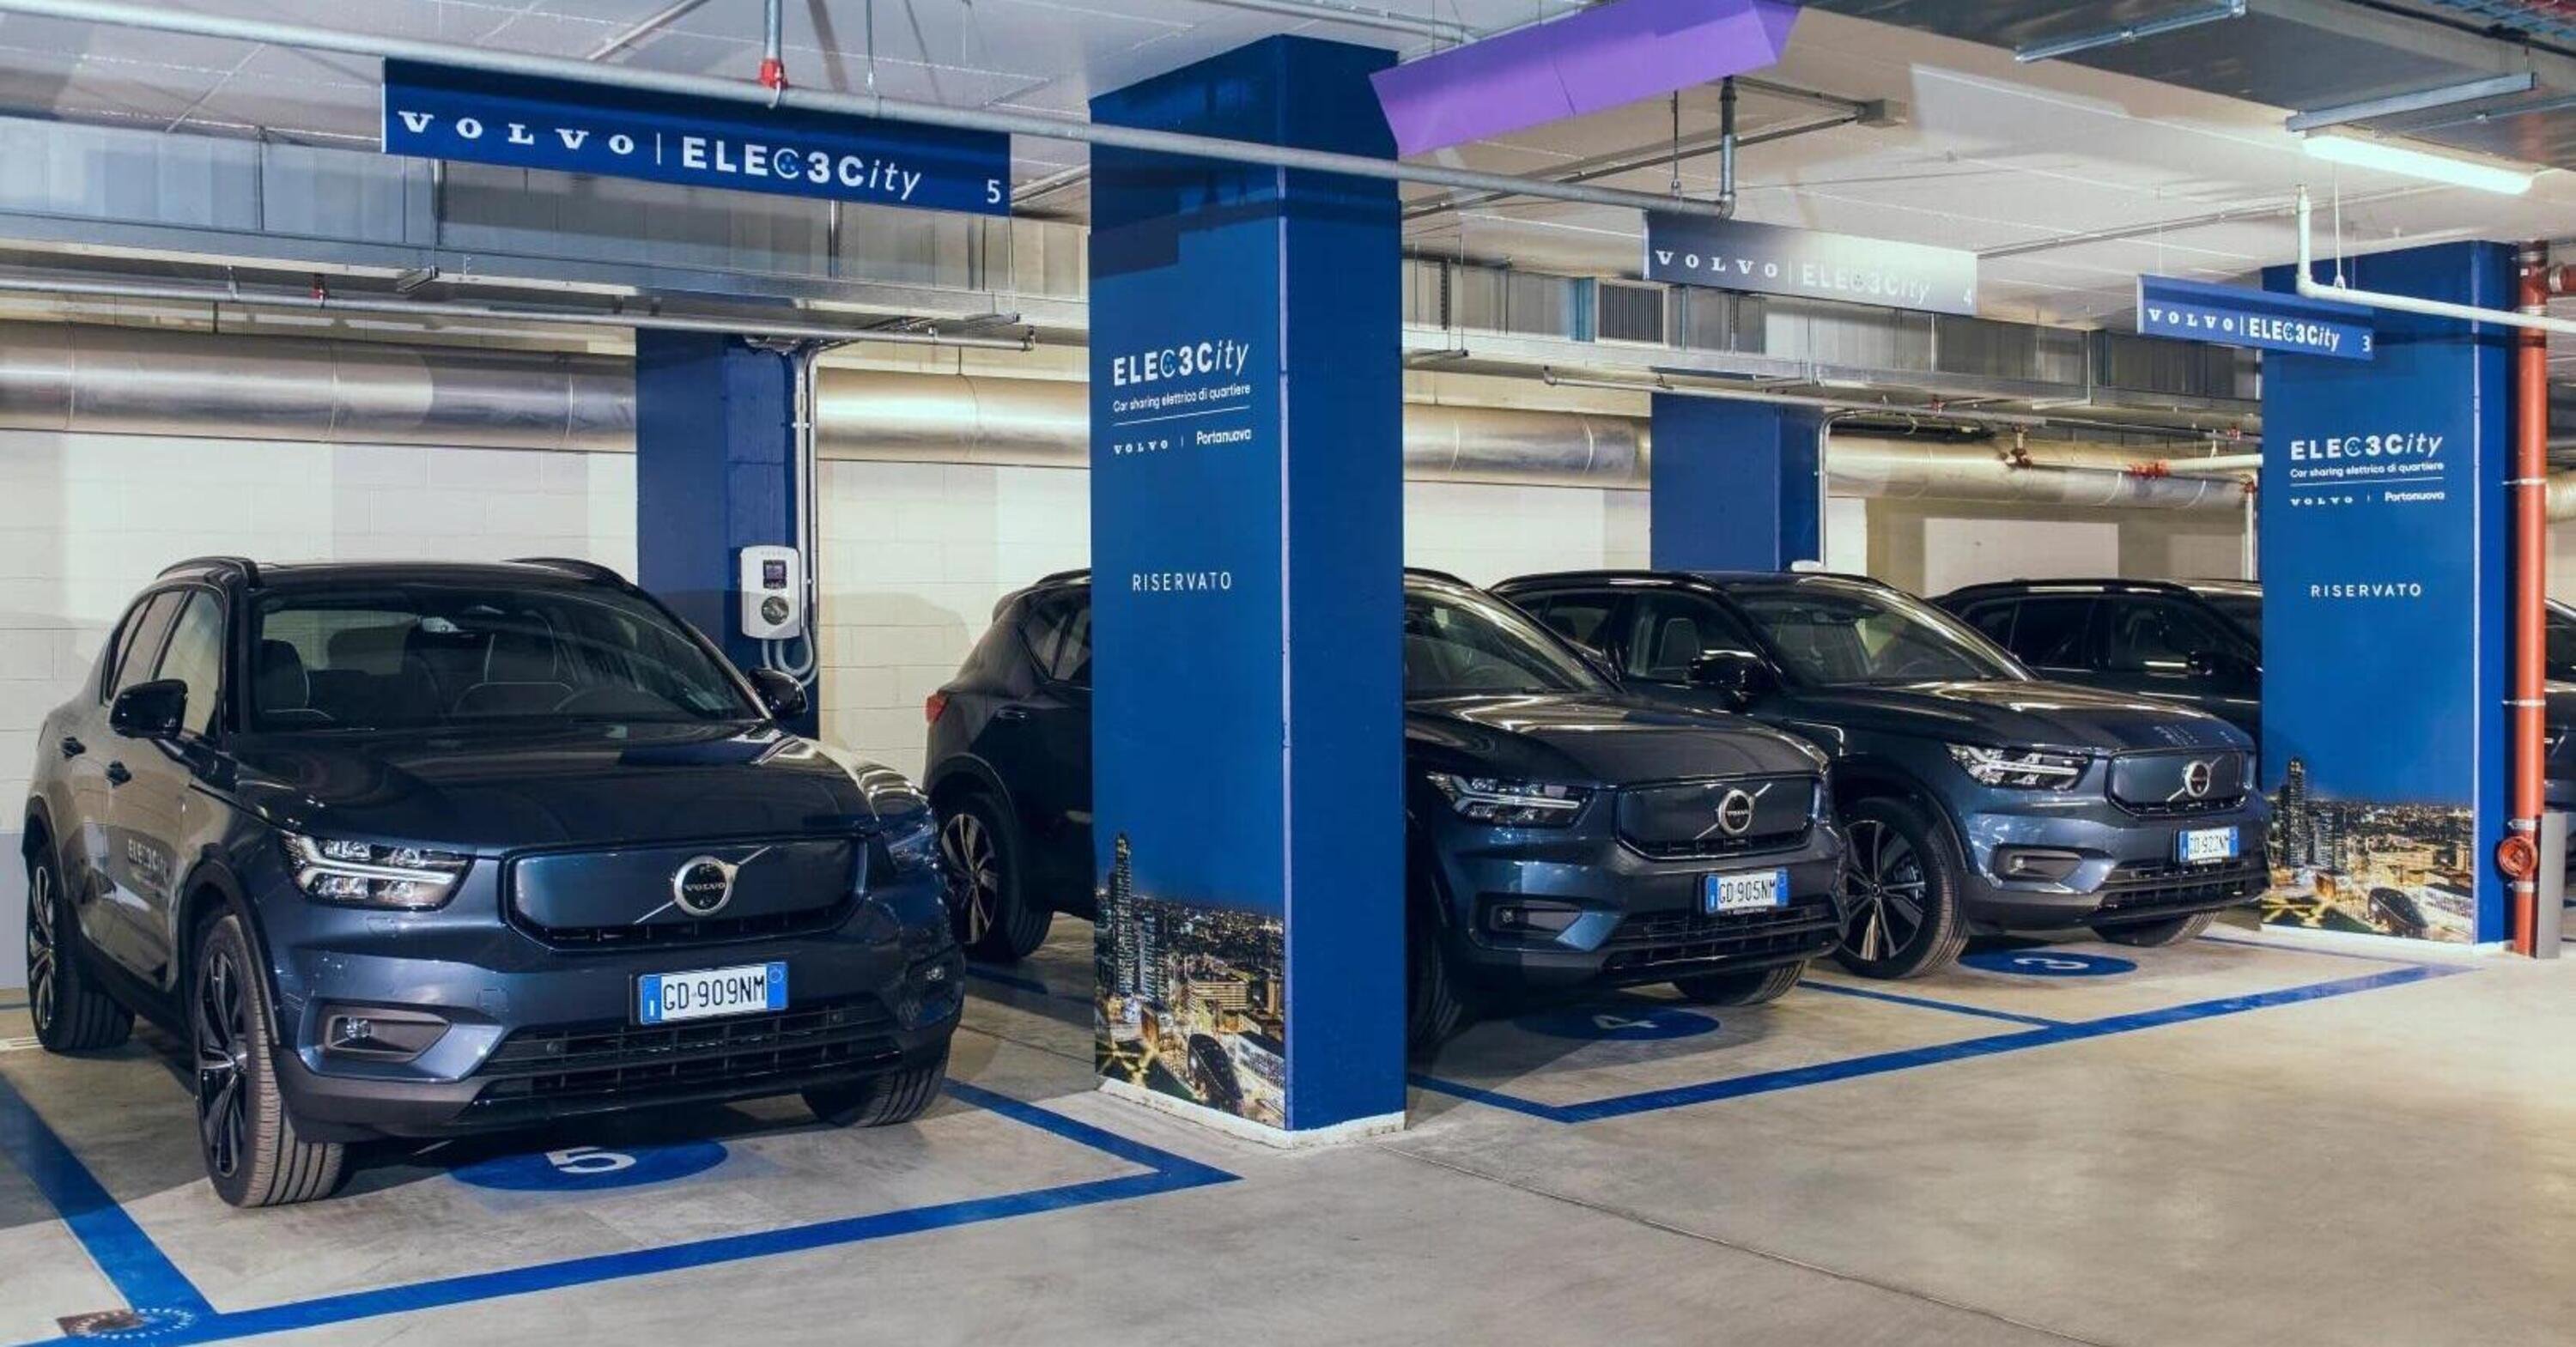 Volvo a Milano Porta Nuova: ricarica e noleggio ELECT3City